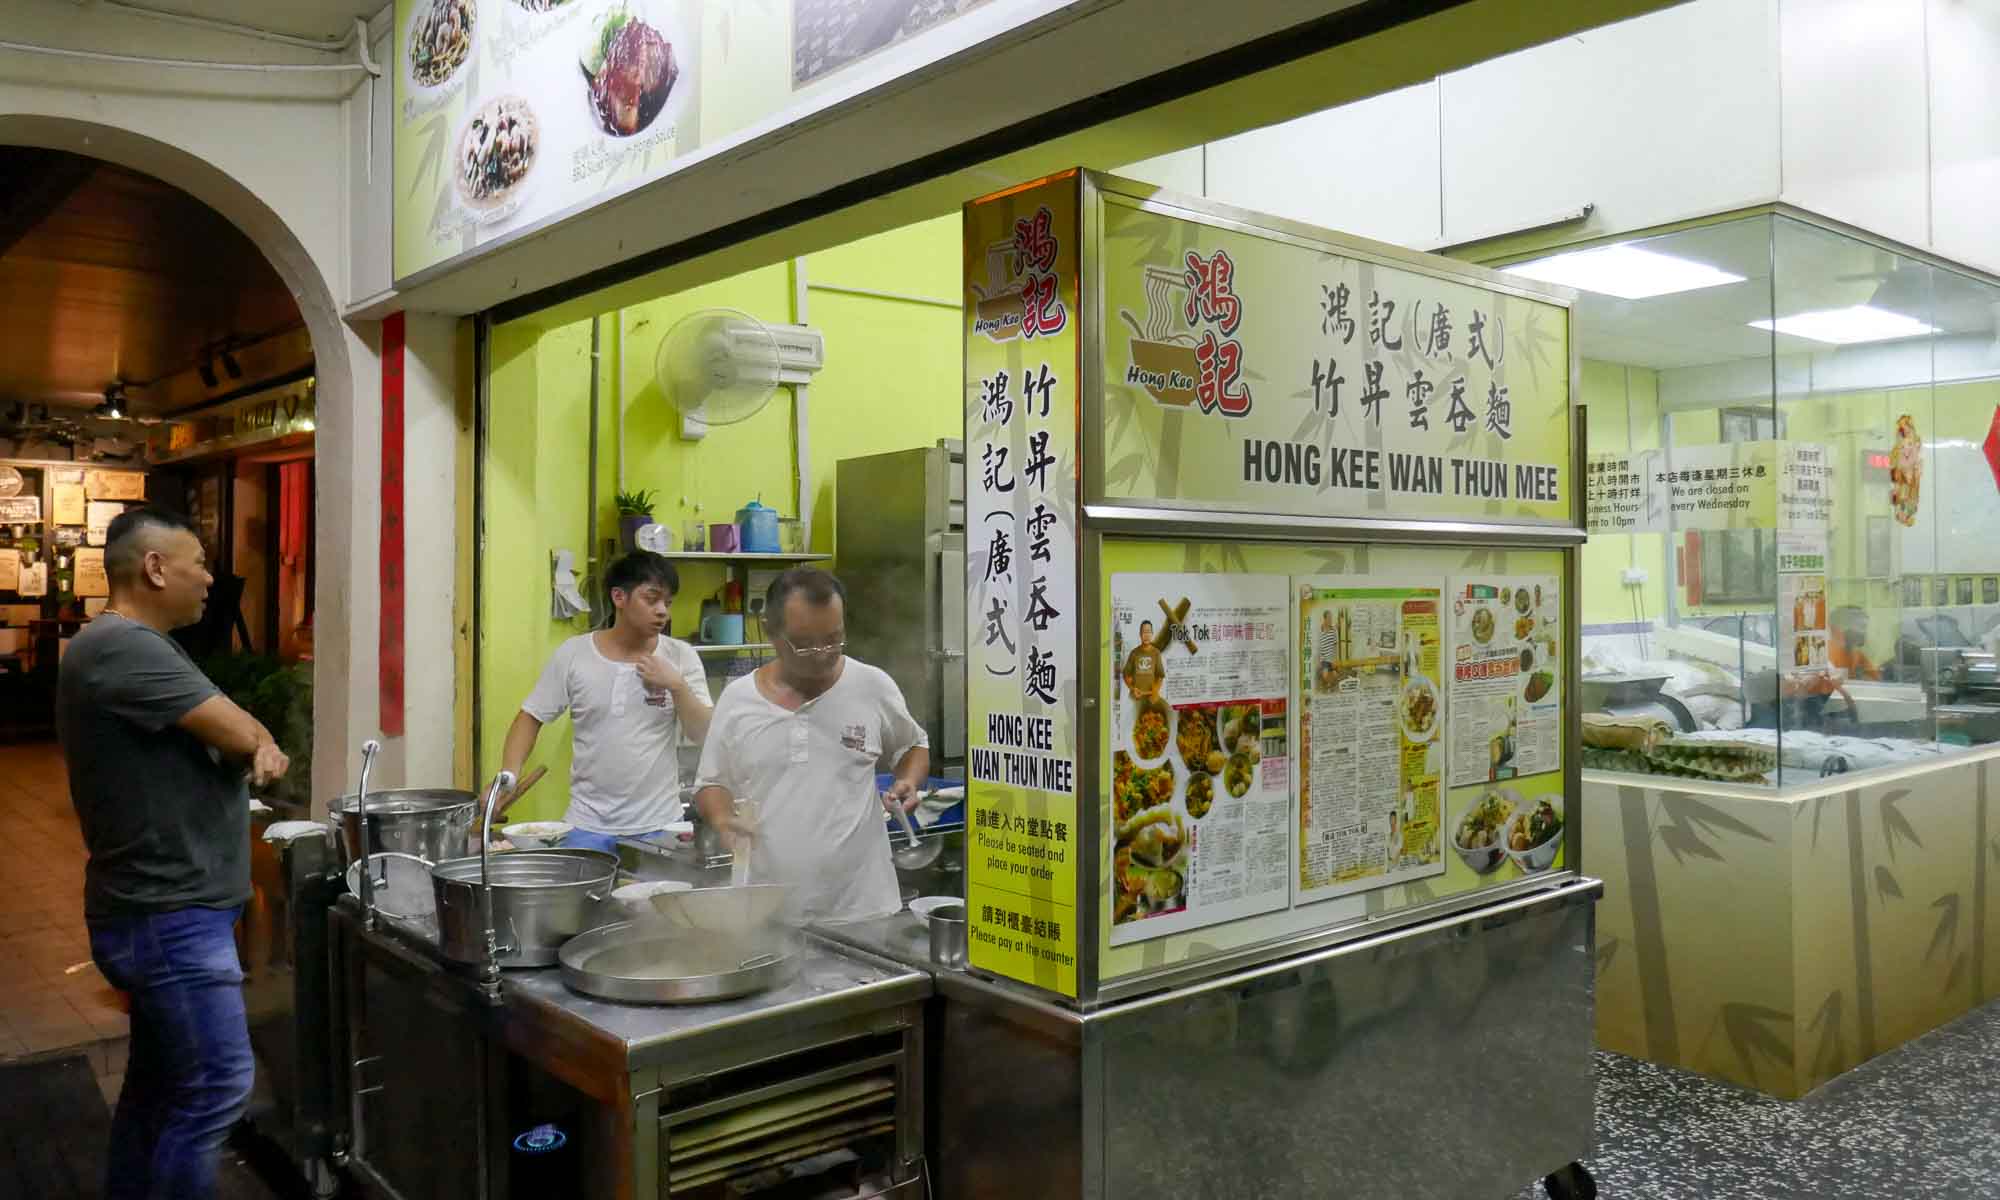 Tasty noodles at Hong Kee Wan Thun Mee